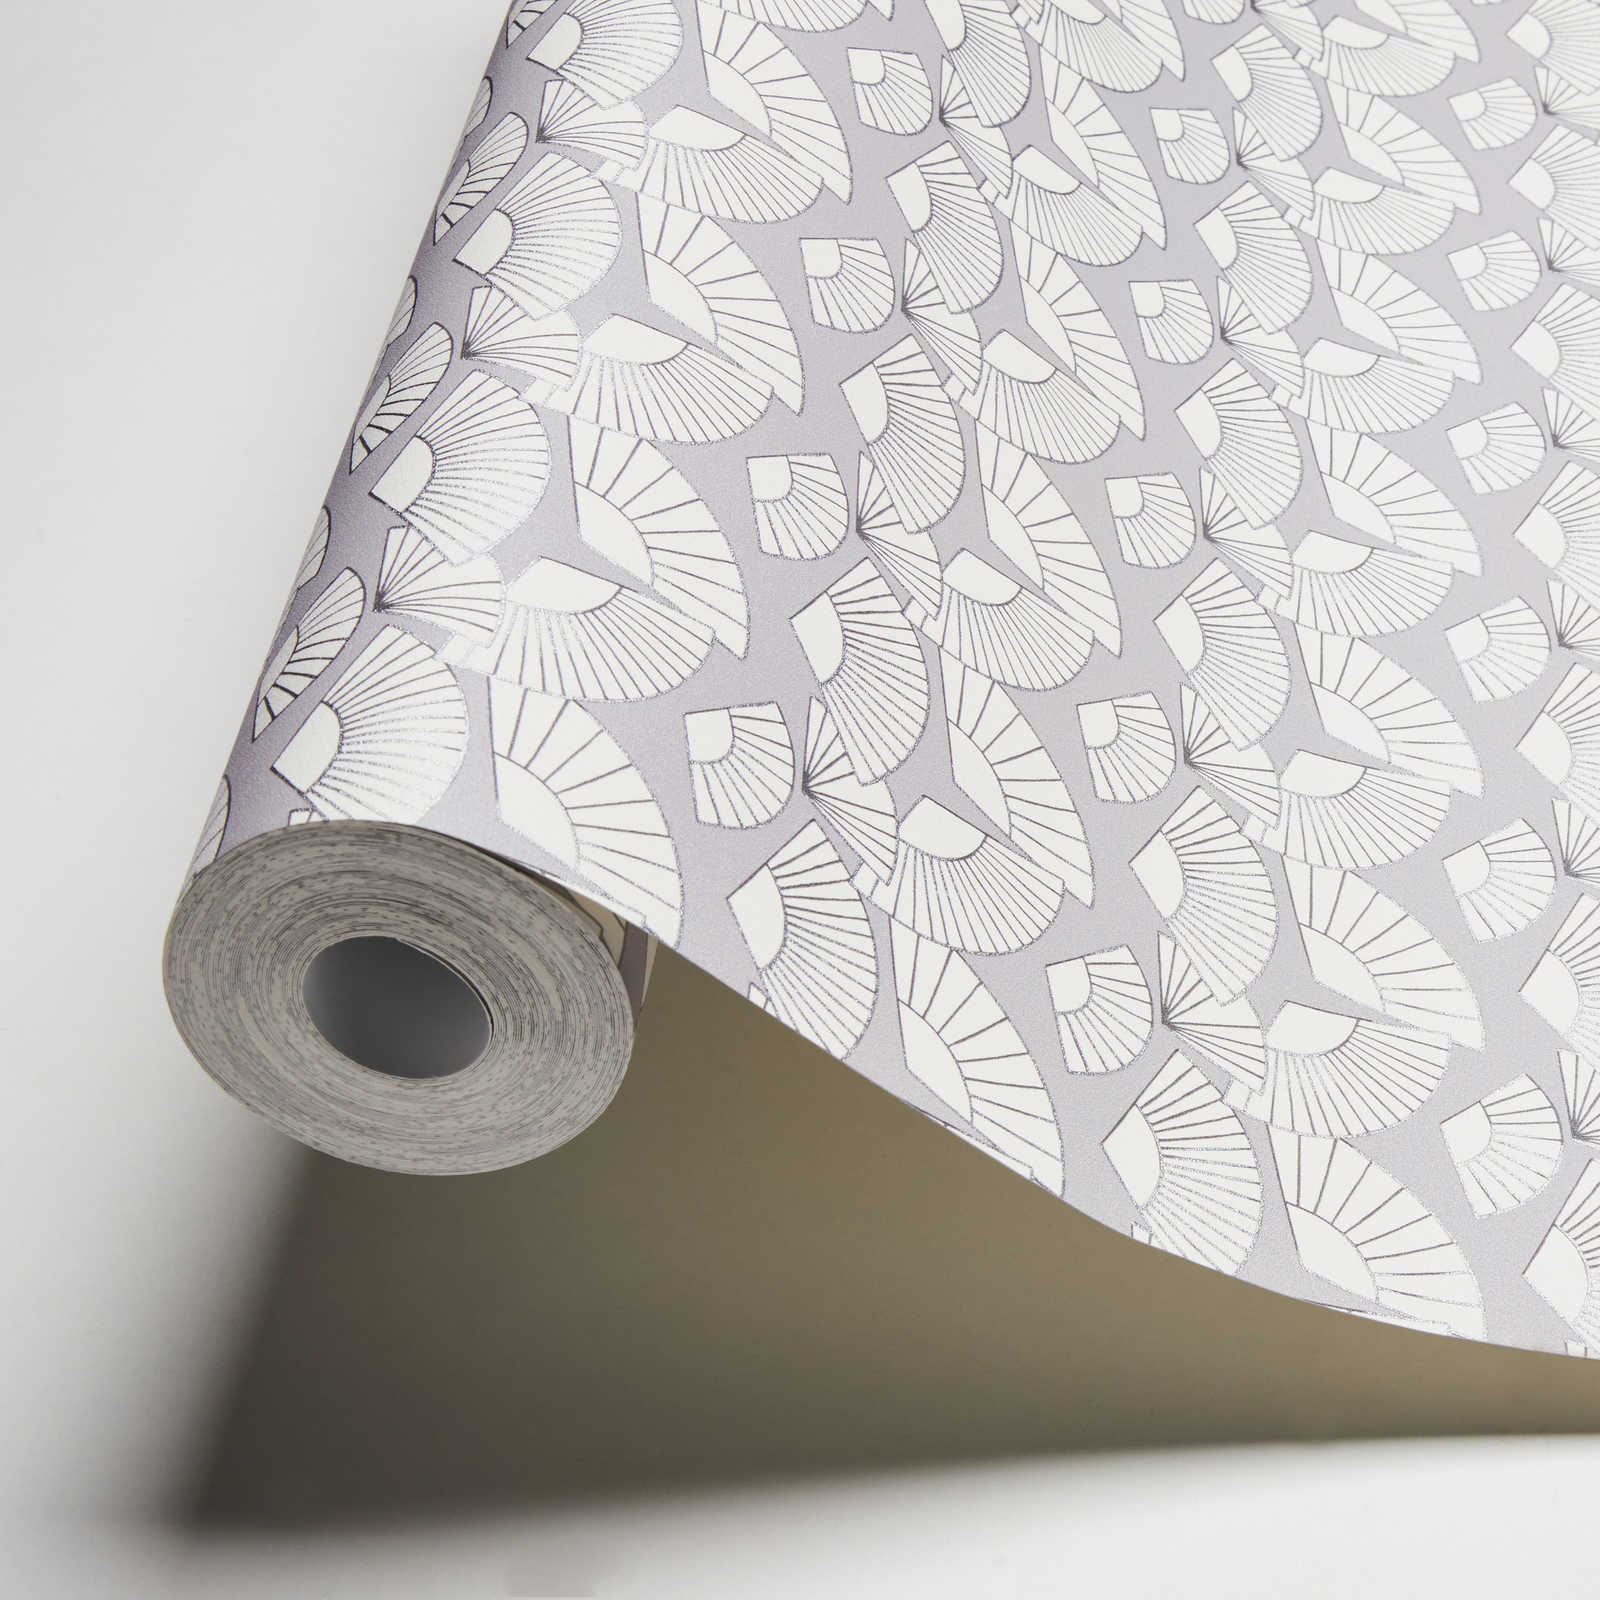             Wallpaper Karl LAGERFELD fan pattern - metallic, white
        